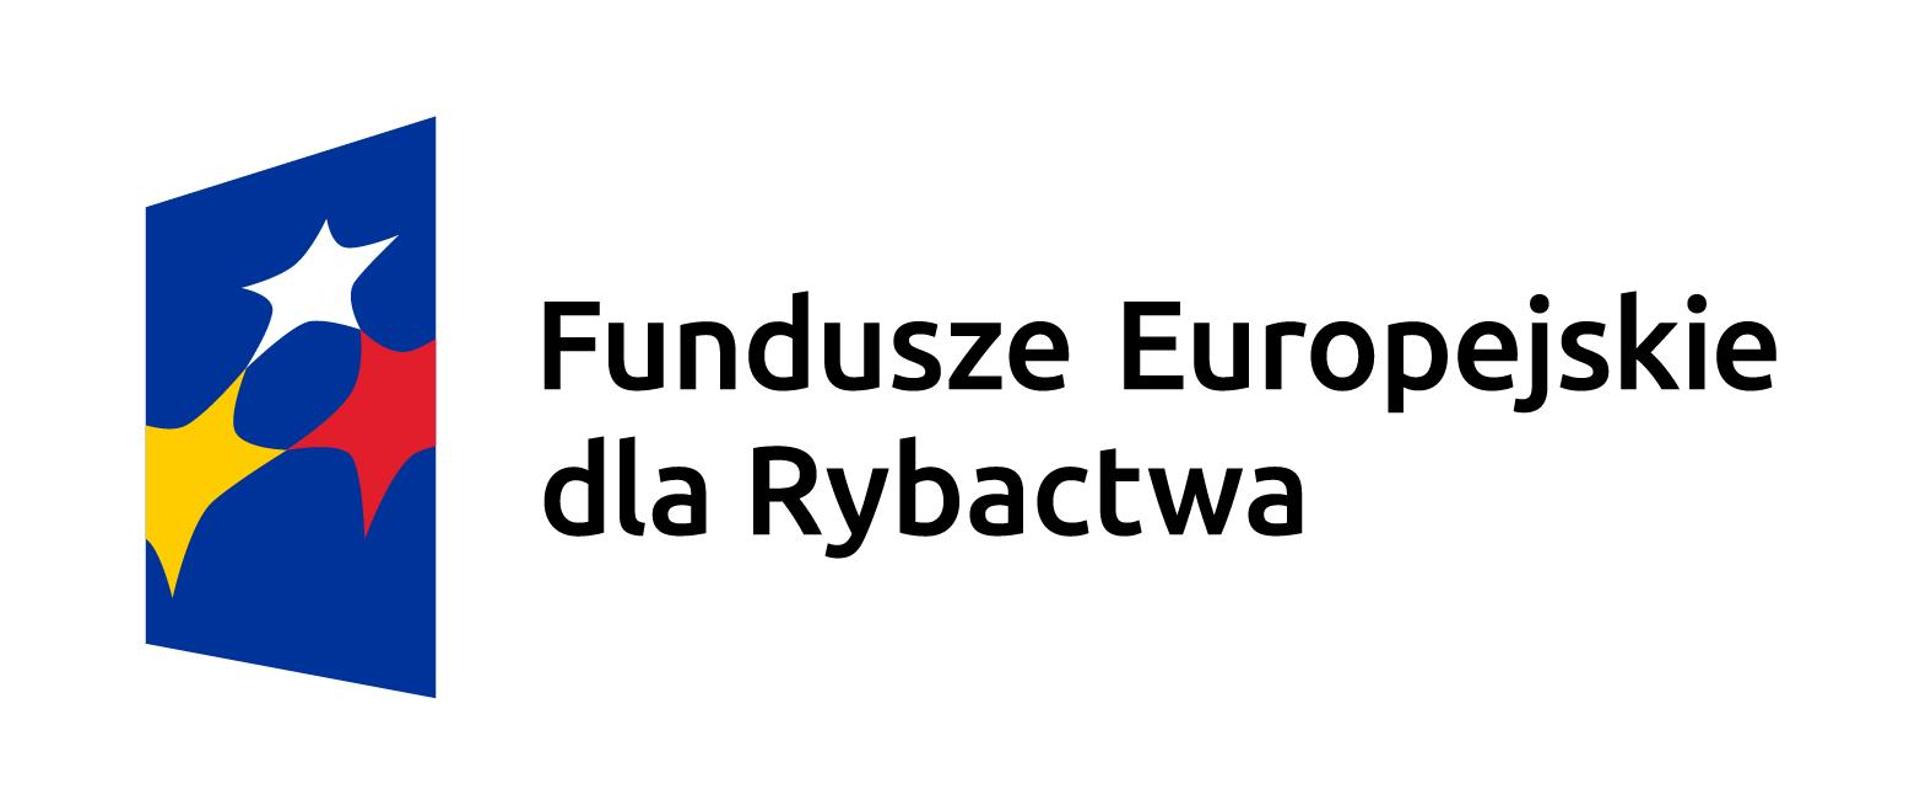 Fundusze Europejskie dla Rybactwa_logo